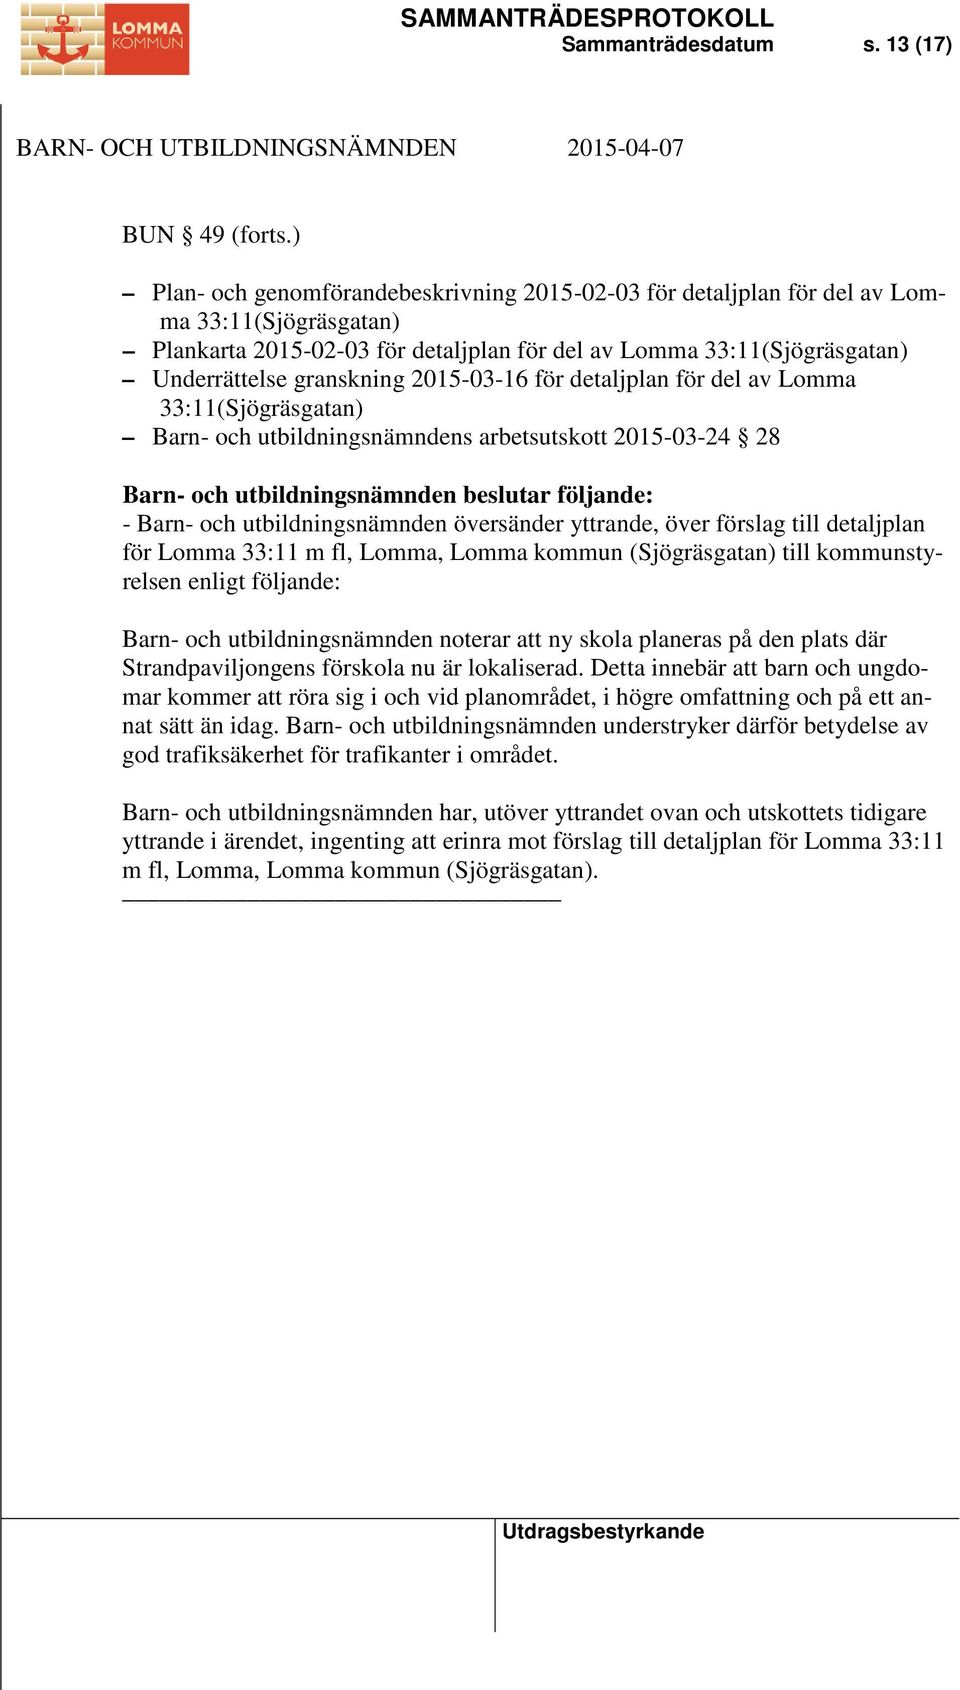 2015-03-16 för detaljplan för del av Lomma 33:11(Sjögräsgatan) Barn- och utbildningsnämndens arbetsutskott 2015-03-24 28 - Barn- och utbildningsnämnden översänder yttrande, över förslag till